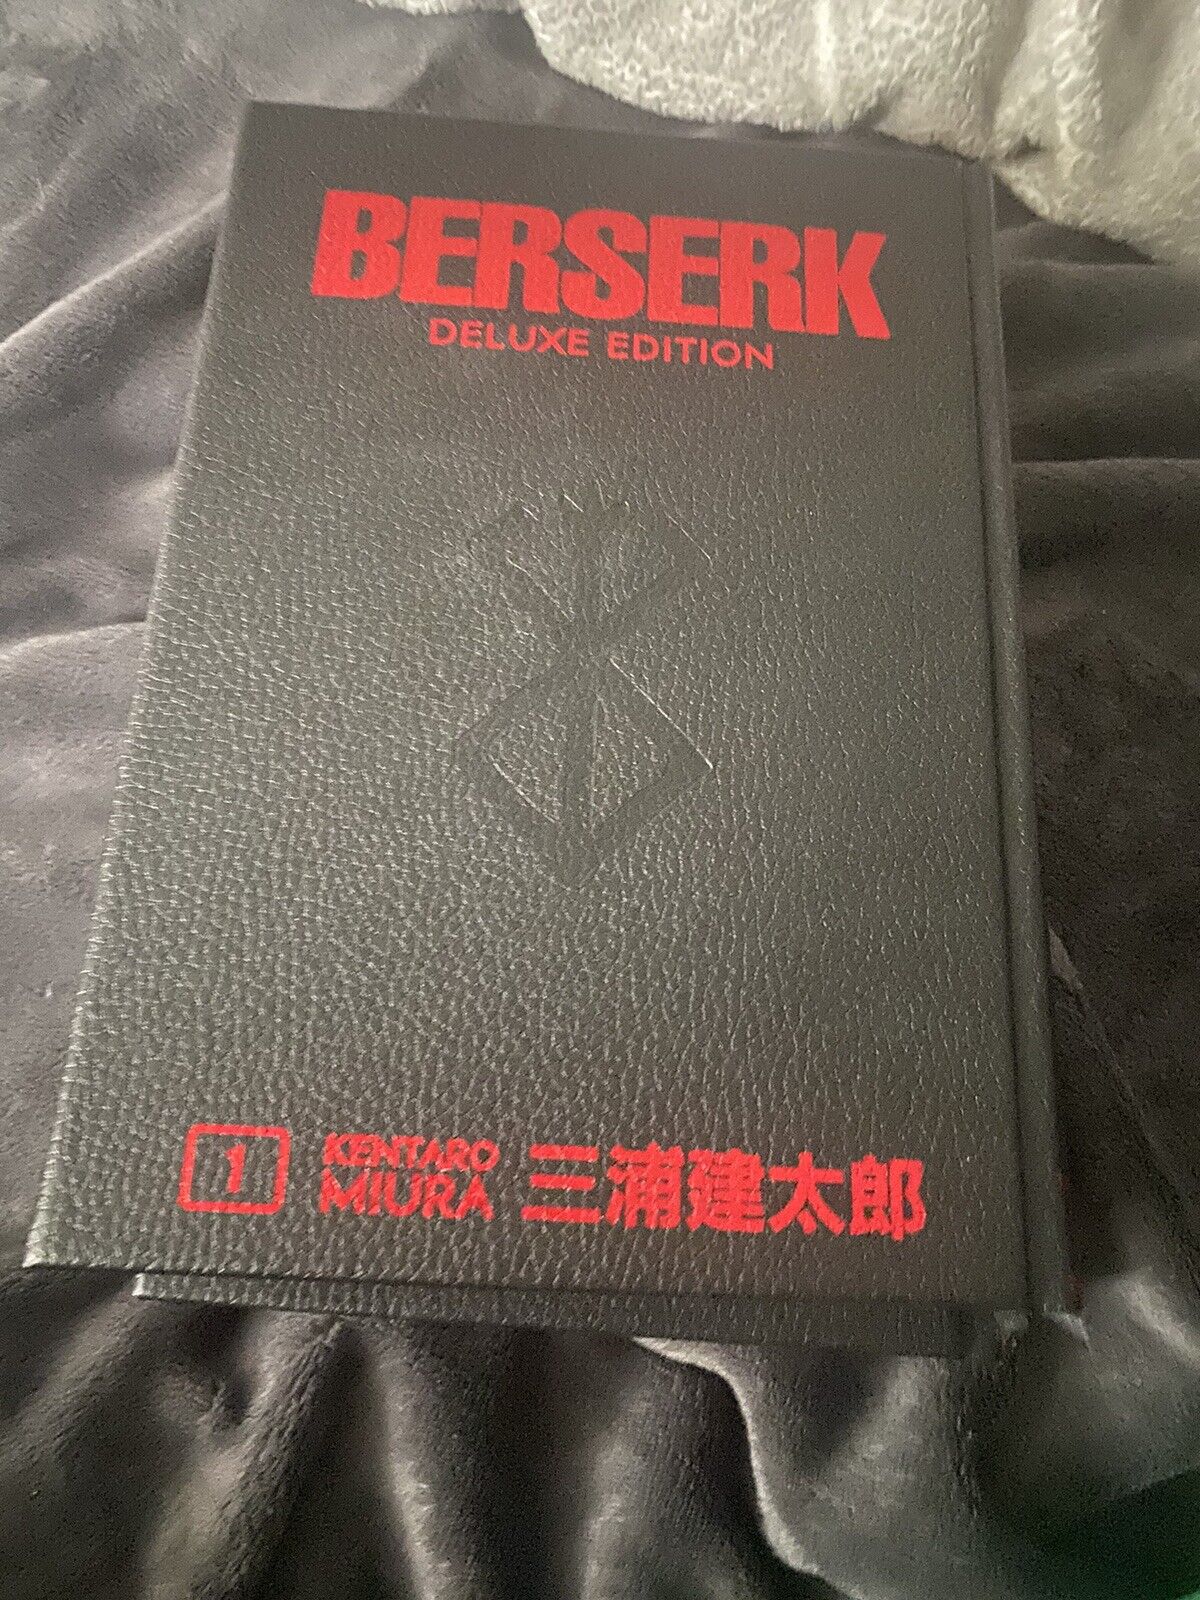 berserk deluxe volume 1 and 2